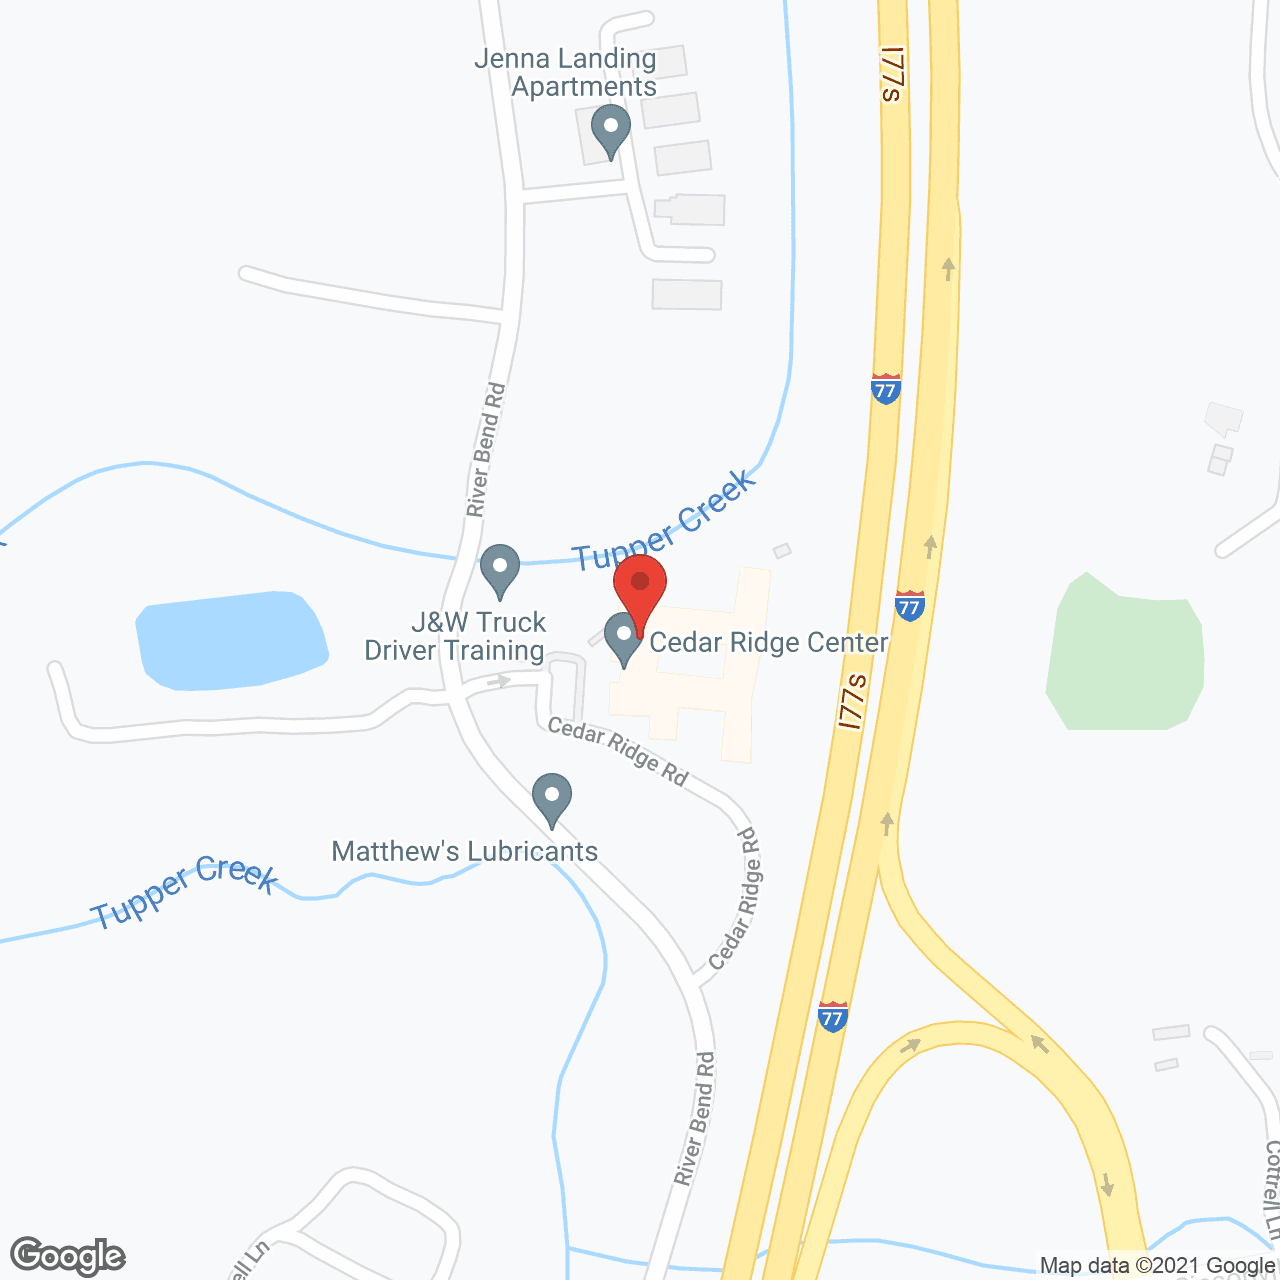 Cedar Ridge Center in google map